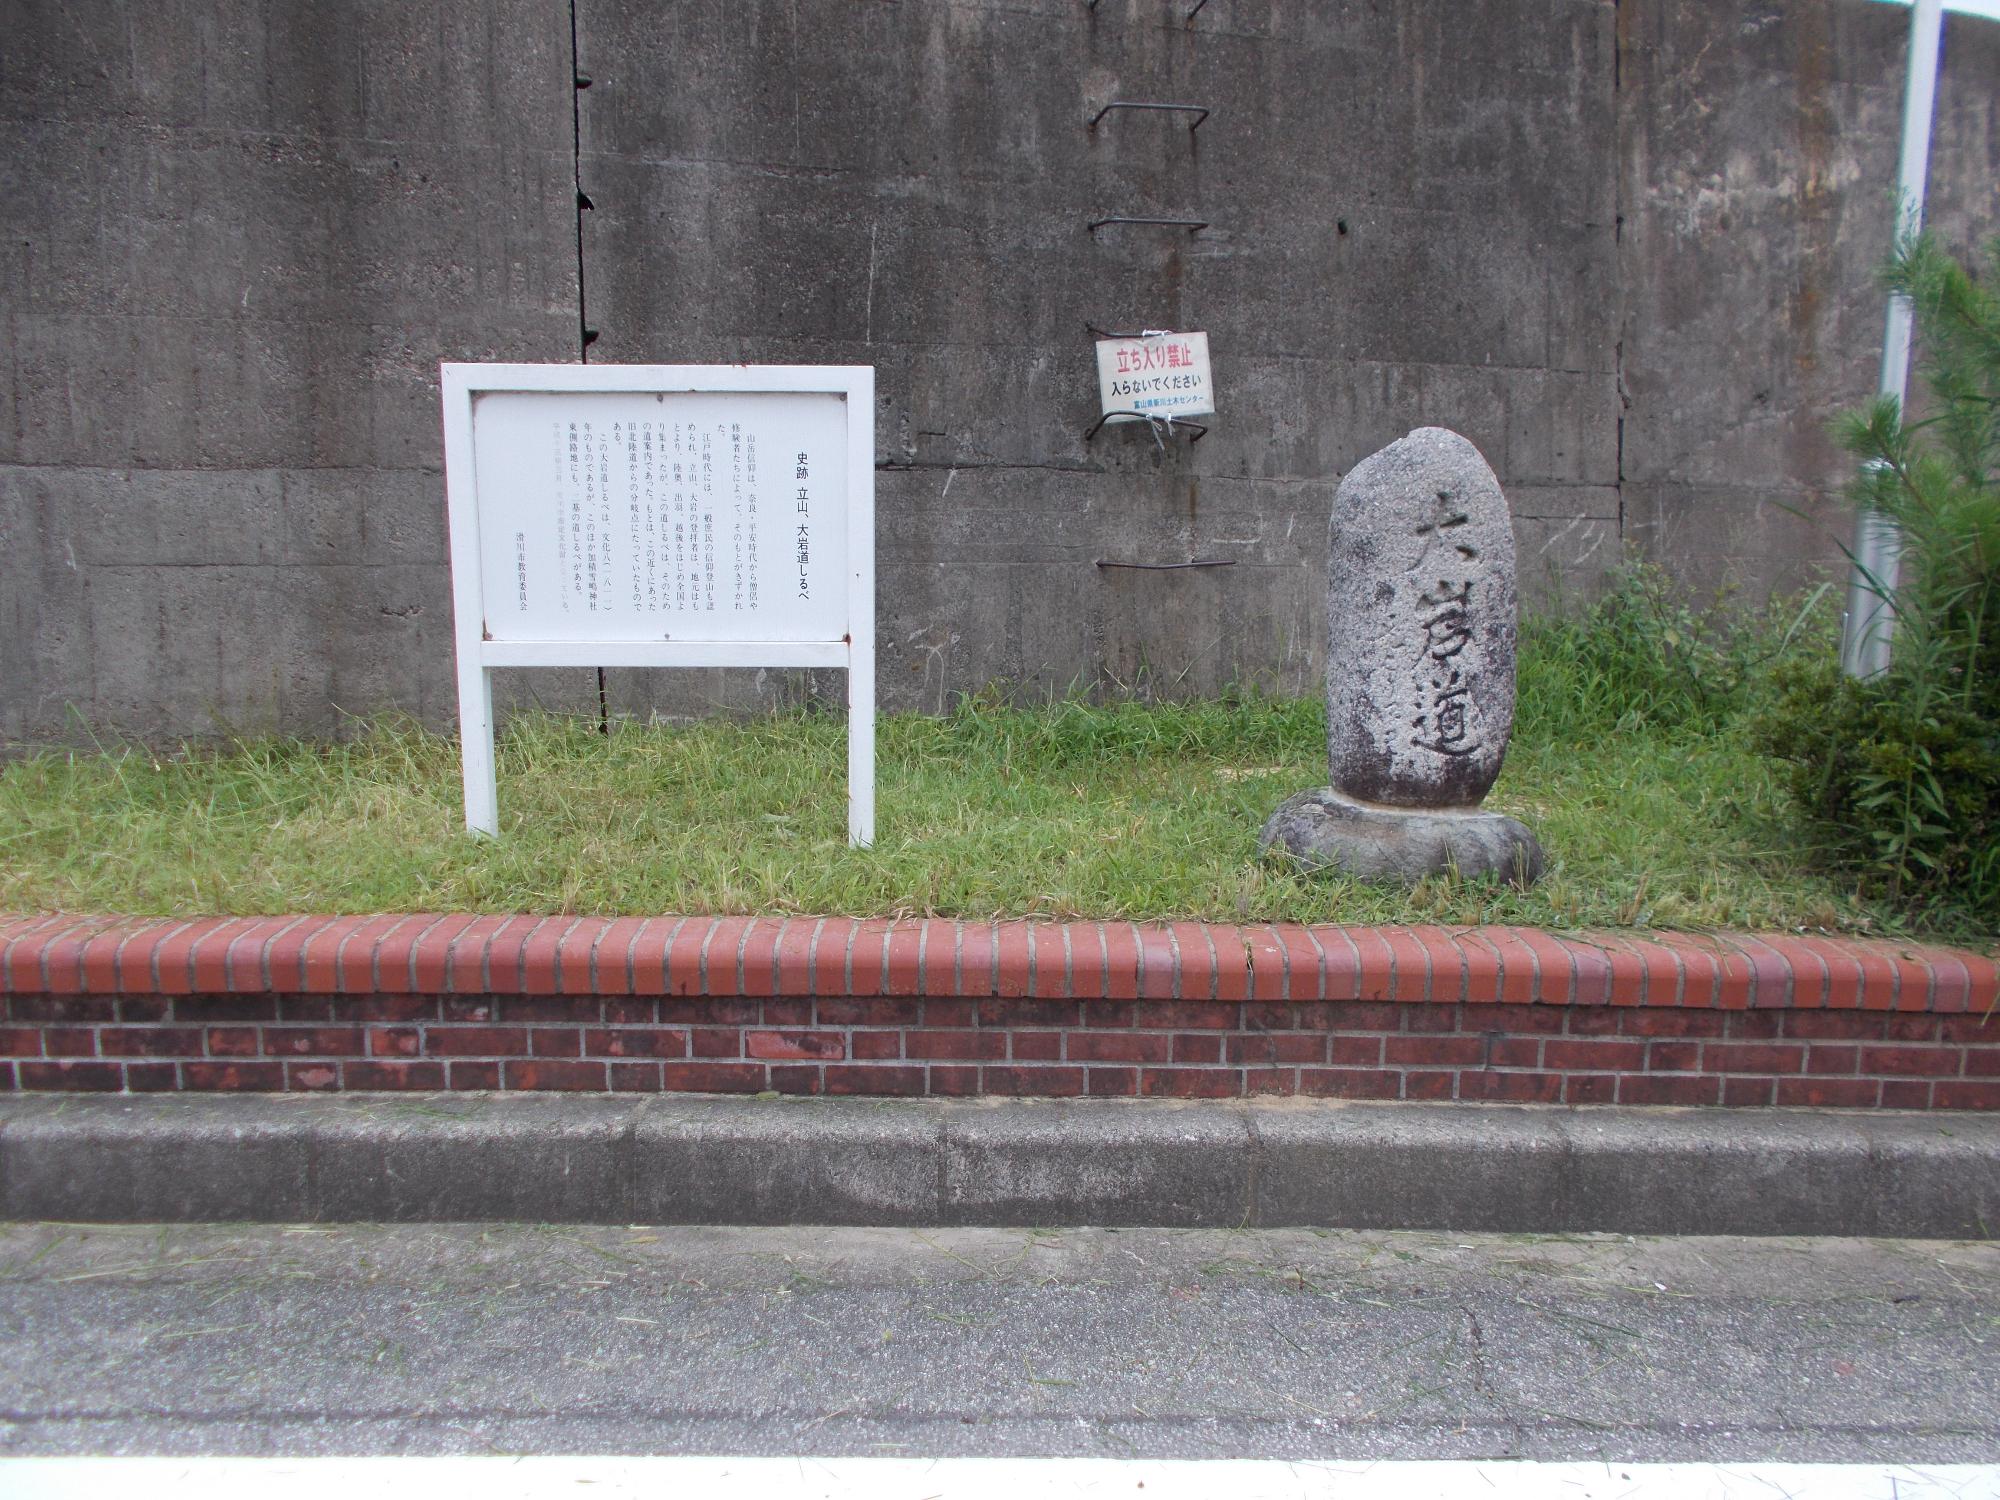 楕円形の岩に「大岩道」と刻まれた「大岩道しるべ」と横に白い案内板が設置設置されている写真